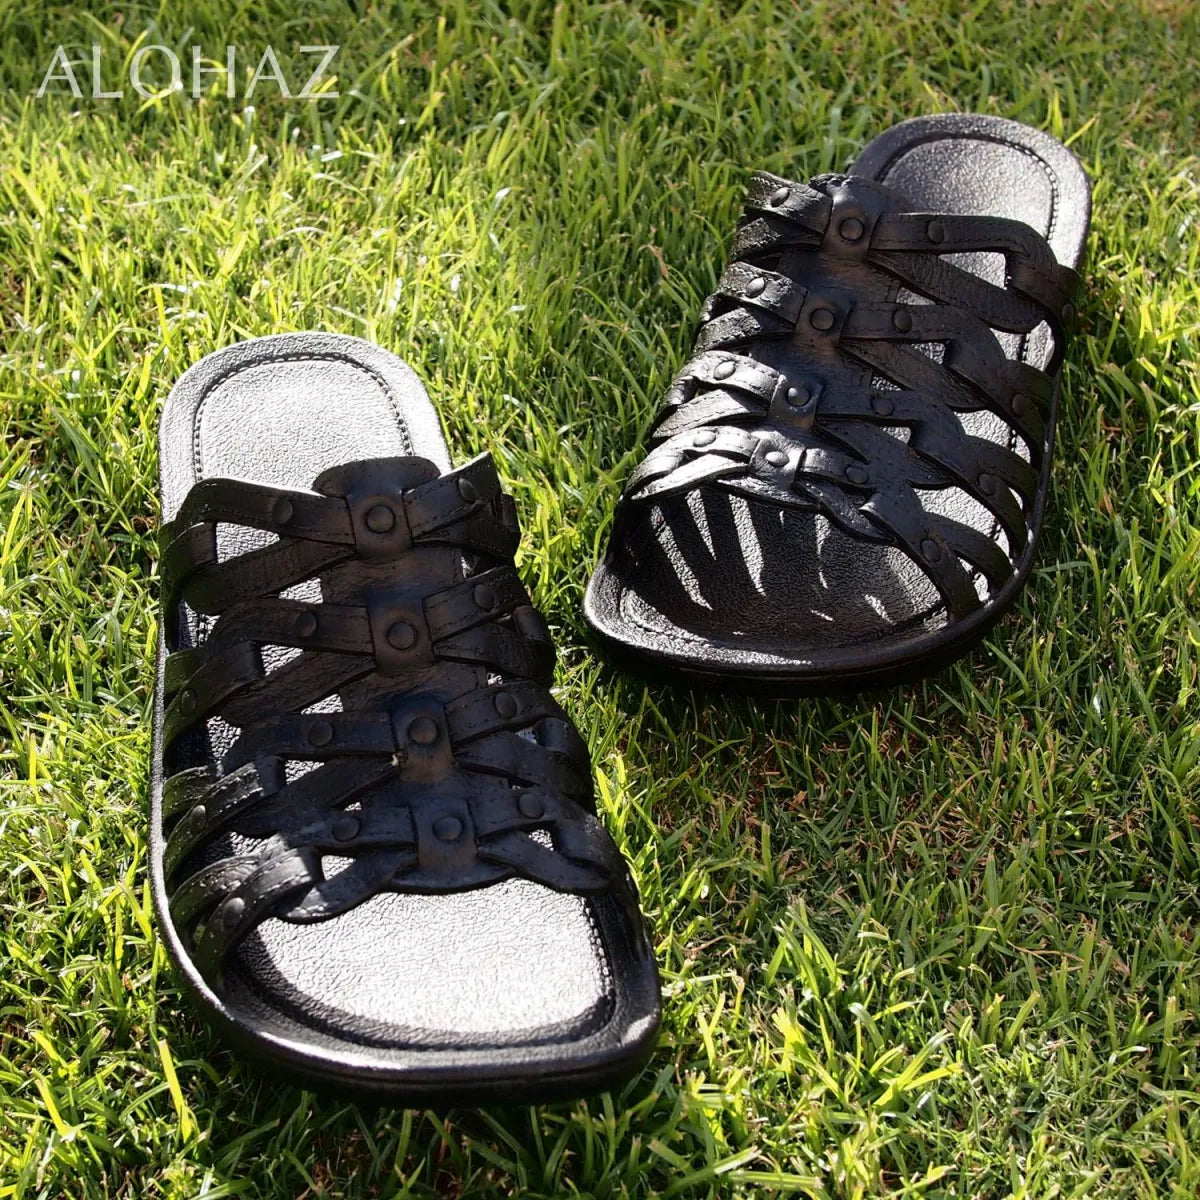 Black tia™ - pali hawaii sandals